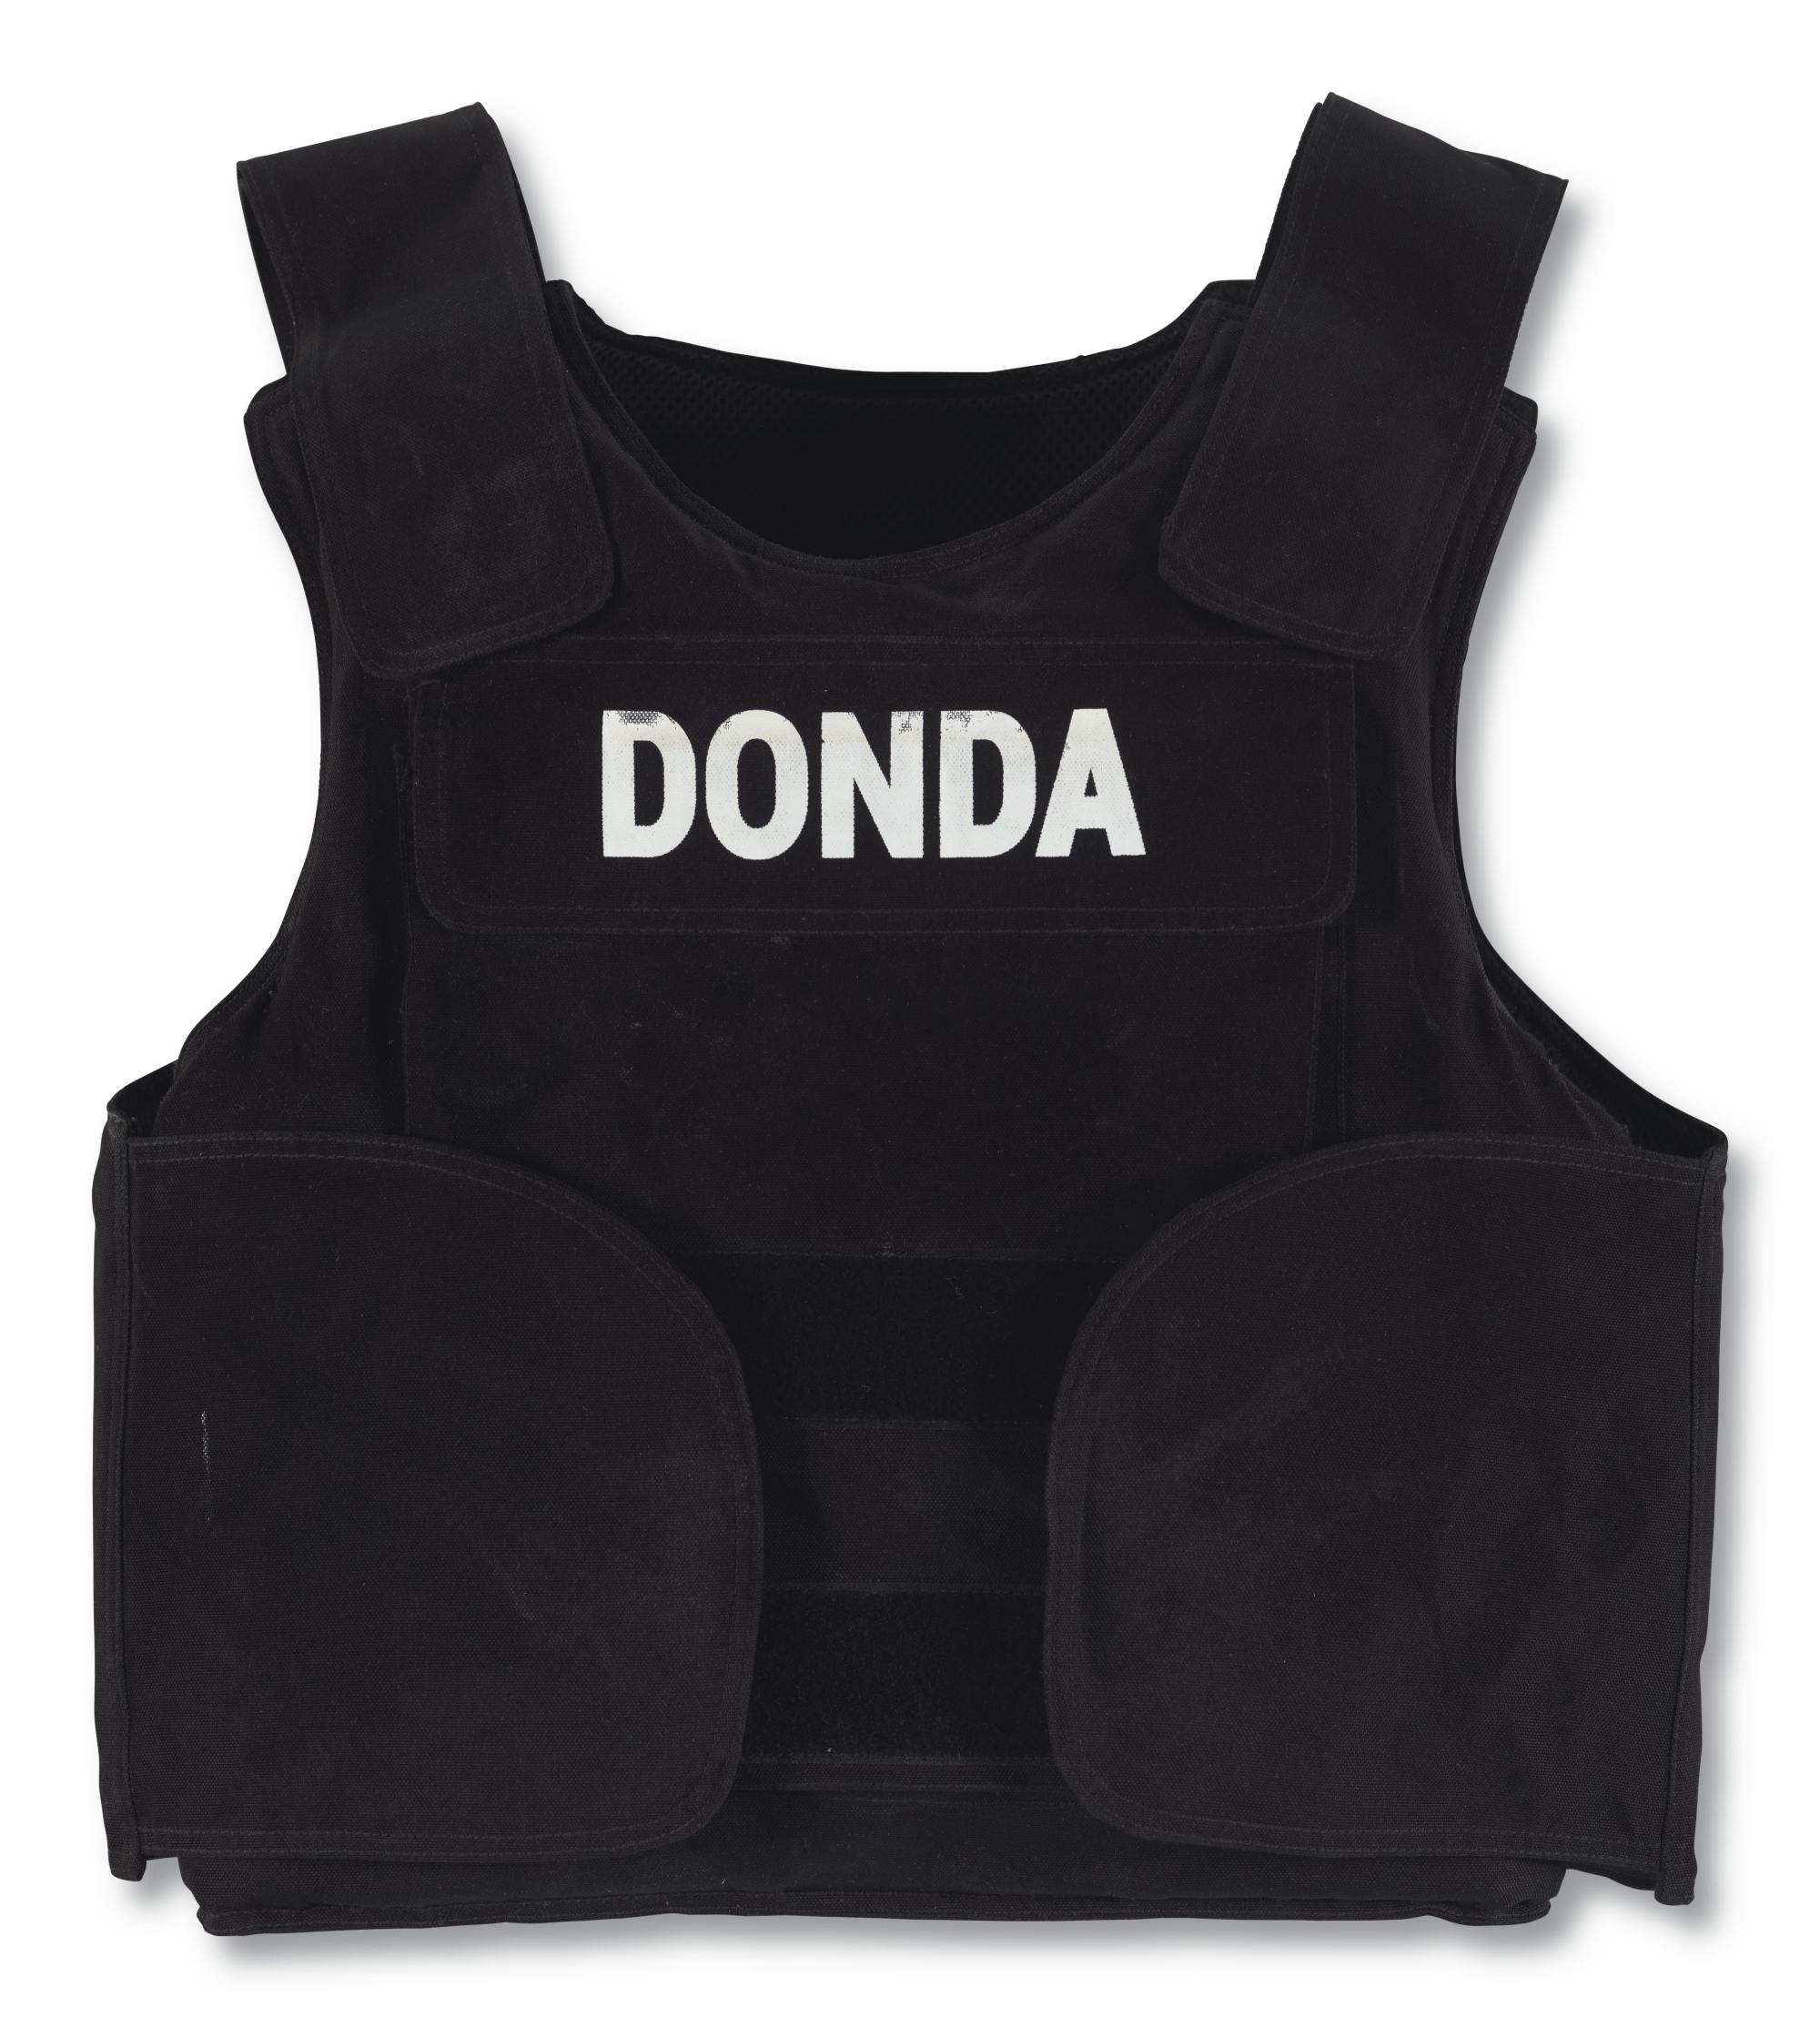 Christie's to auction DONDA Bullet Proof Vest NFT